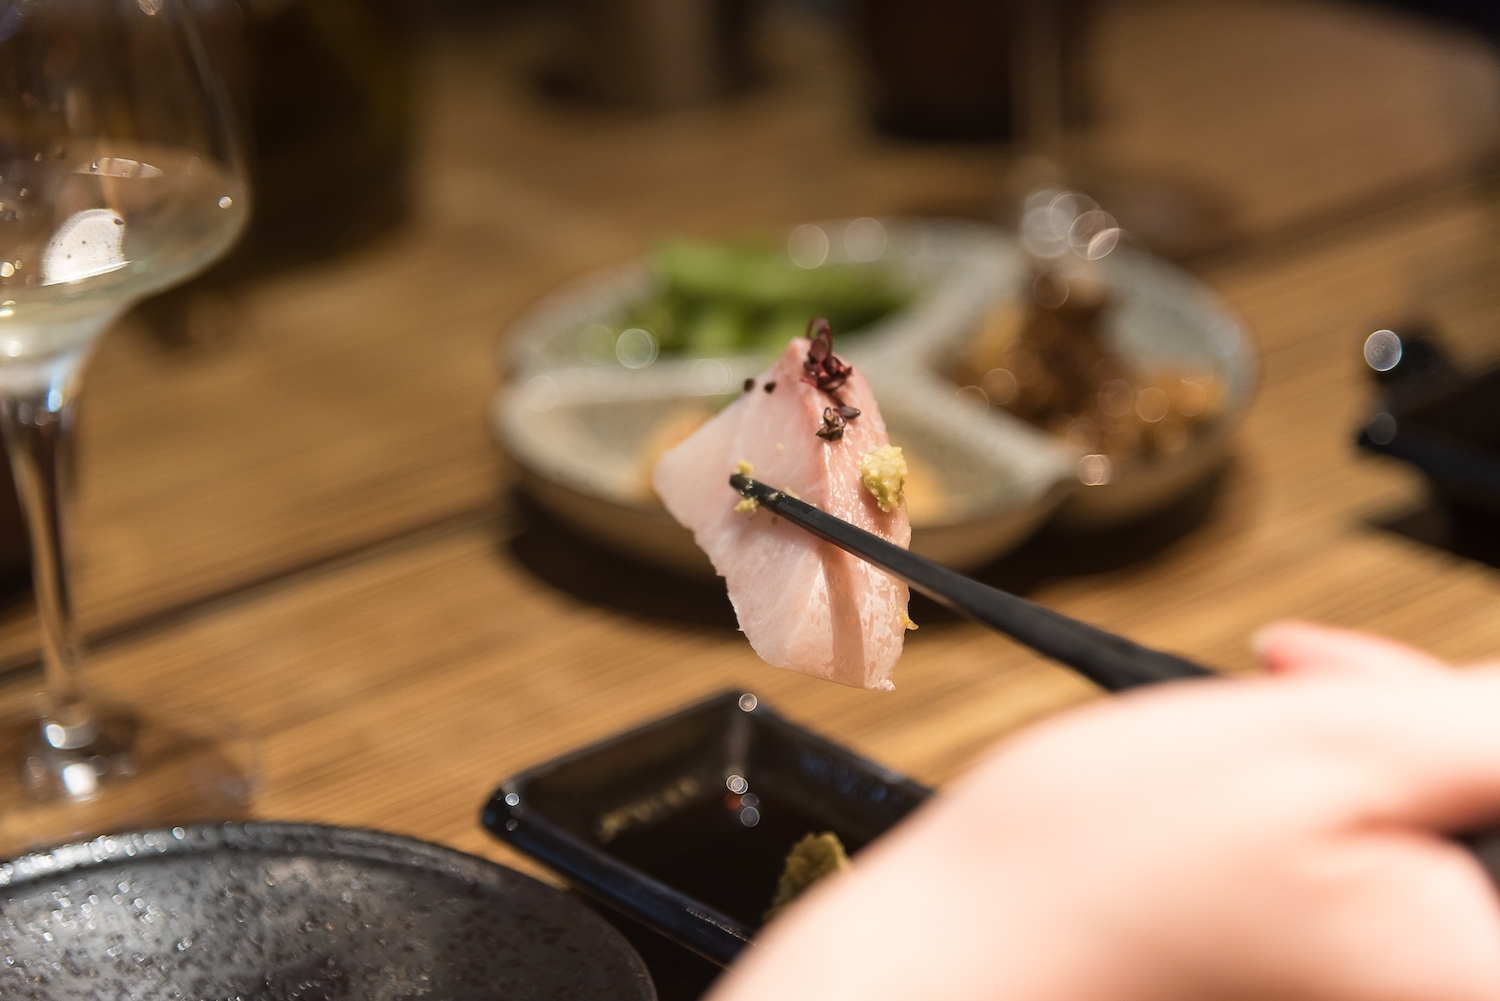 內湖日式料理美食推薦 幸和殿 大推生魚片刺身、清酒服務 